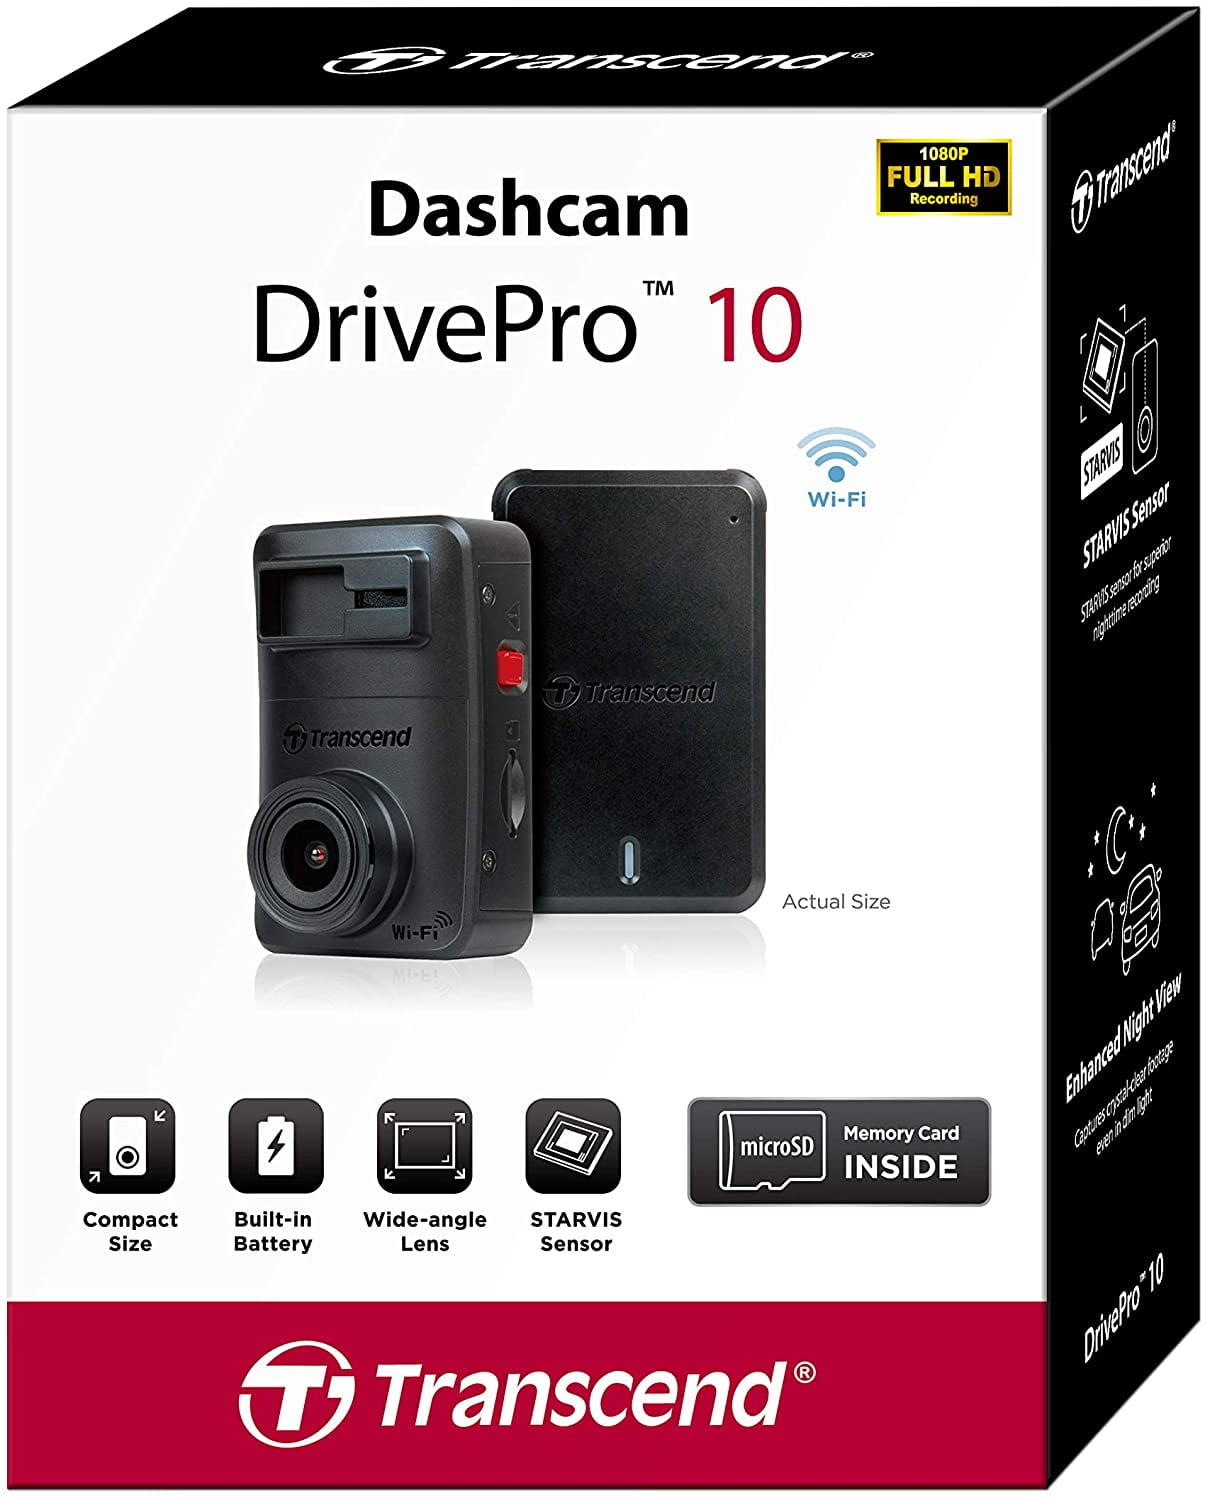 Transcend Dashcam DrivePro 10 videocamera per auto 